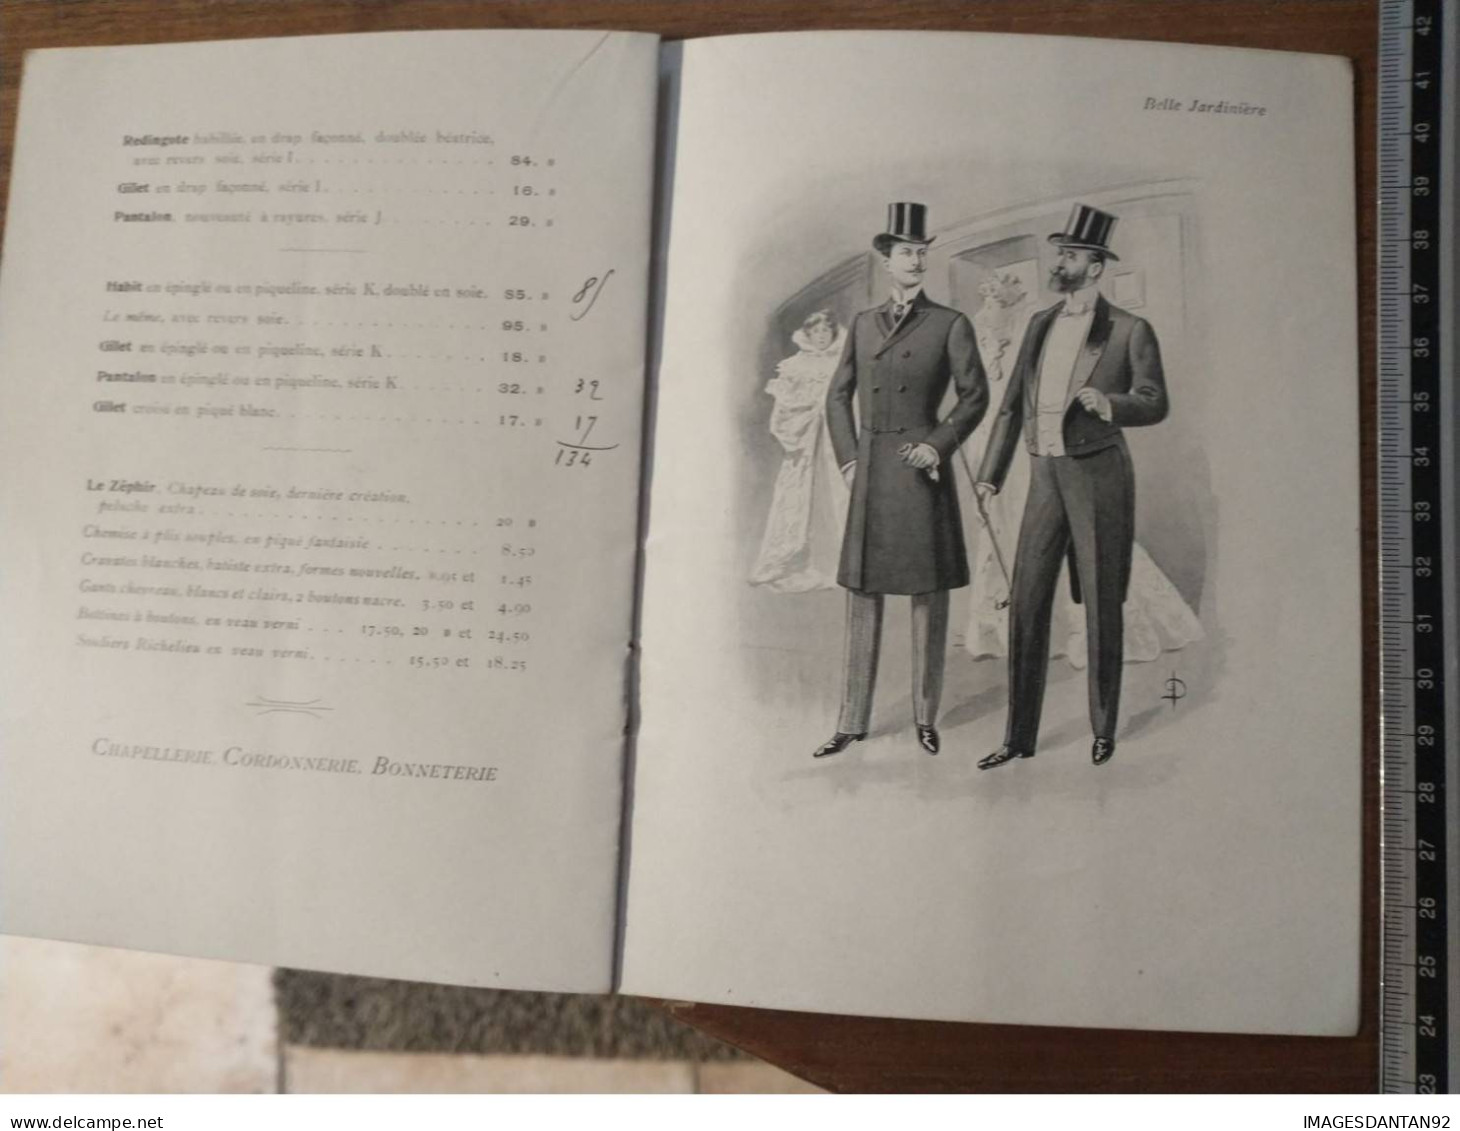 REVUE LA BELLE JARDINIERE 1901 VETEMENTS MODE PUBLICITE COMPLET 10 PAGES SUPERBE ETAT 18X13 CM PAR ILLUSTRATEUR DUREL - Fashion